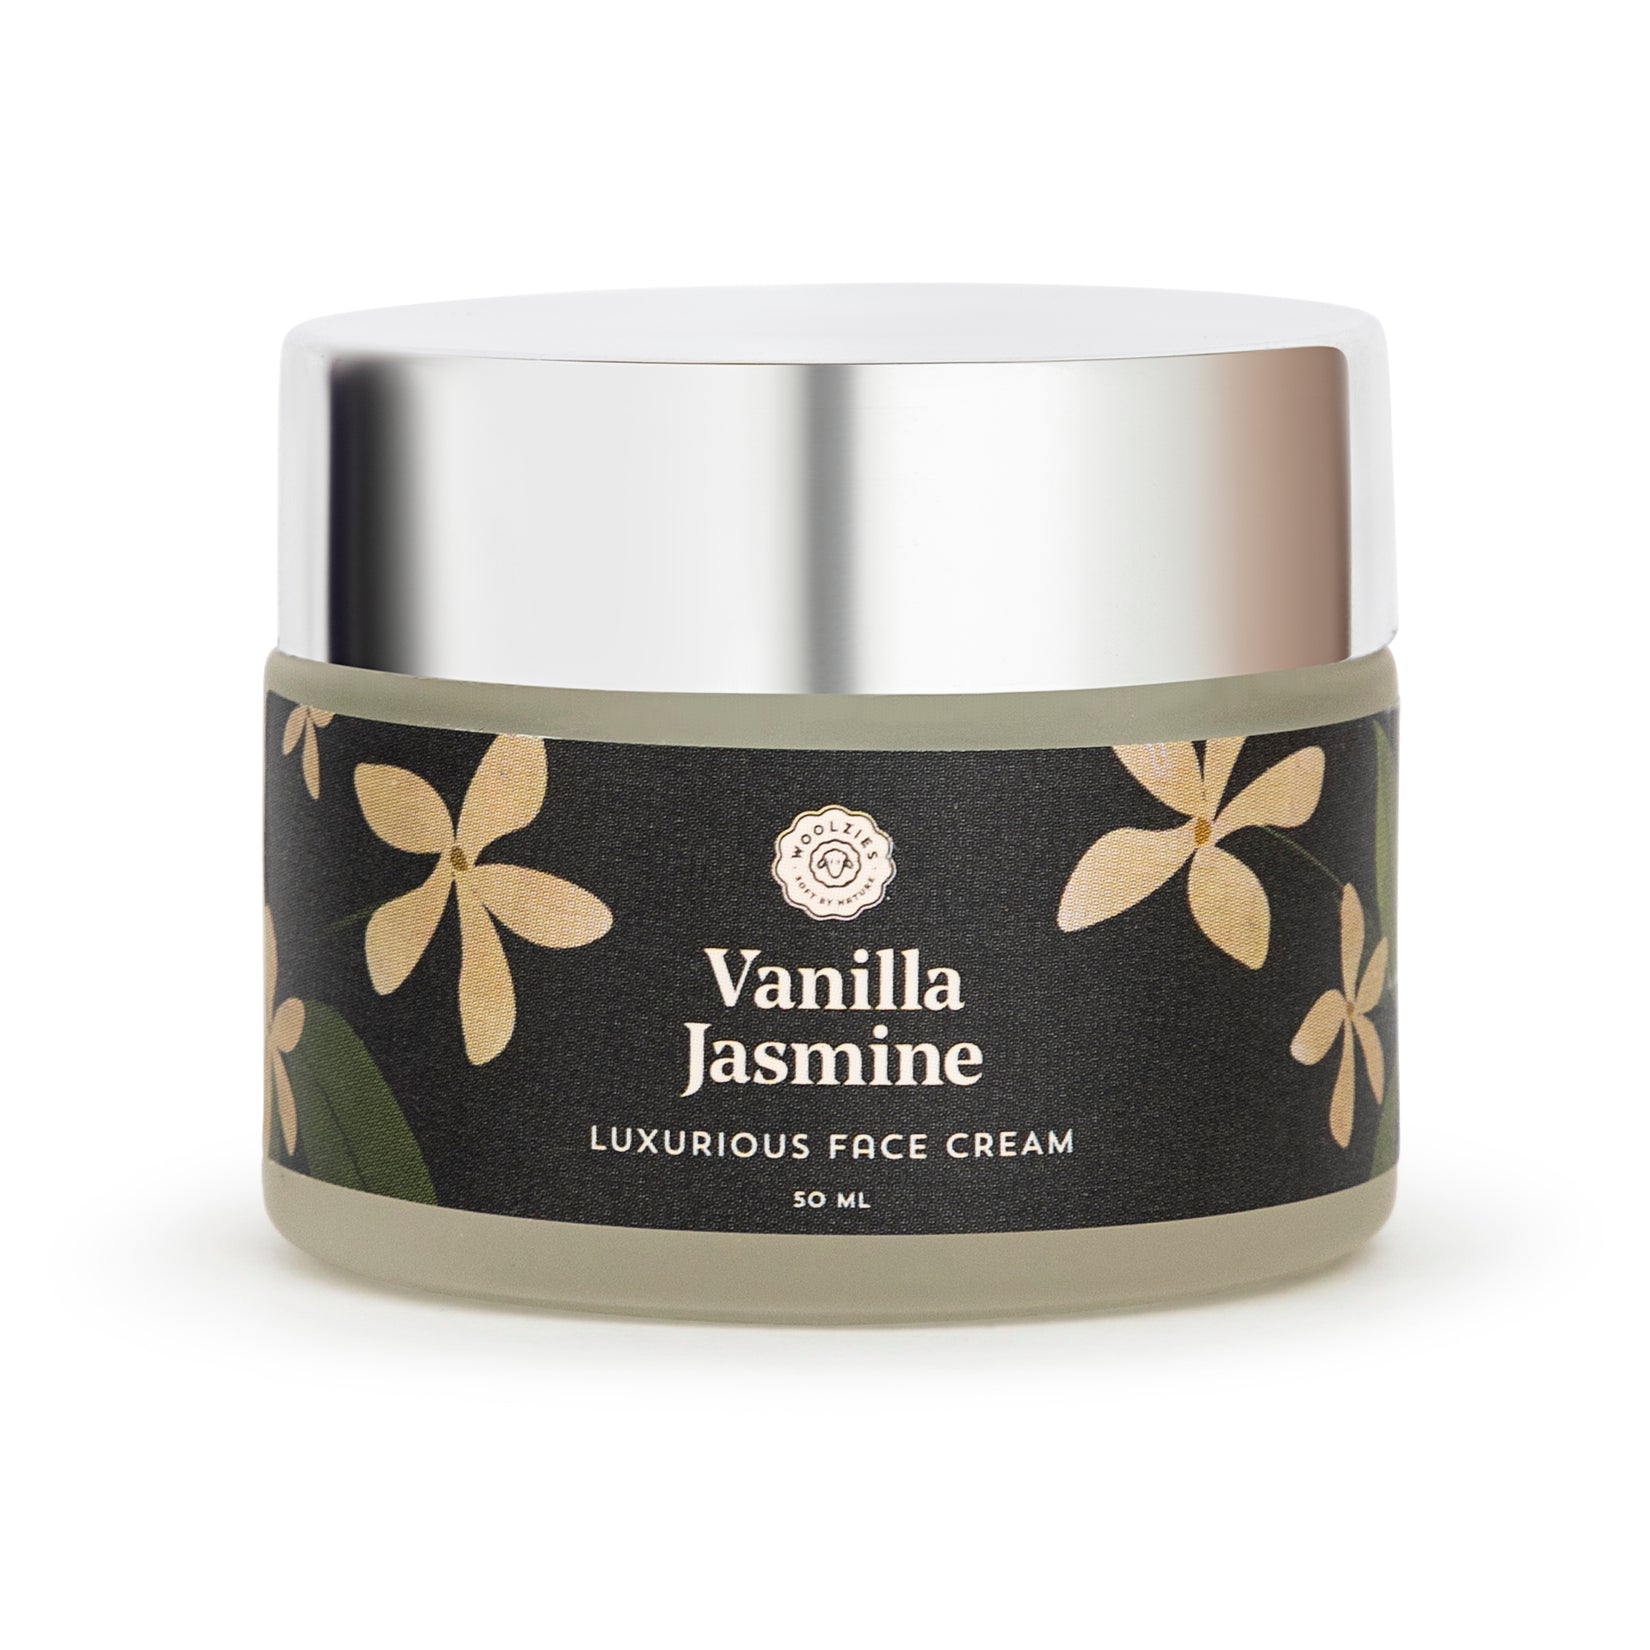 Vanilla Jasmine Luxurious Face Cream